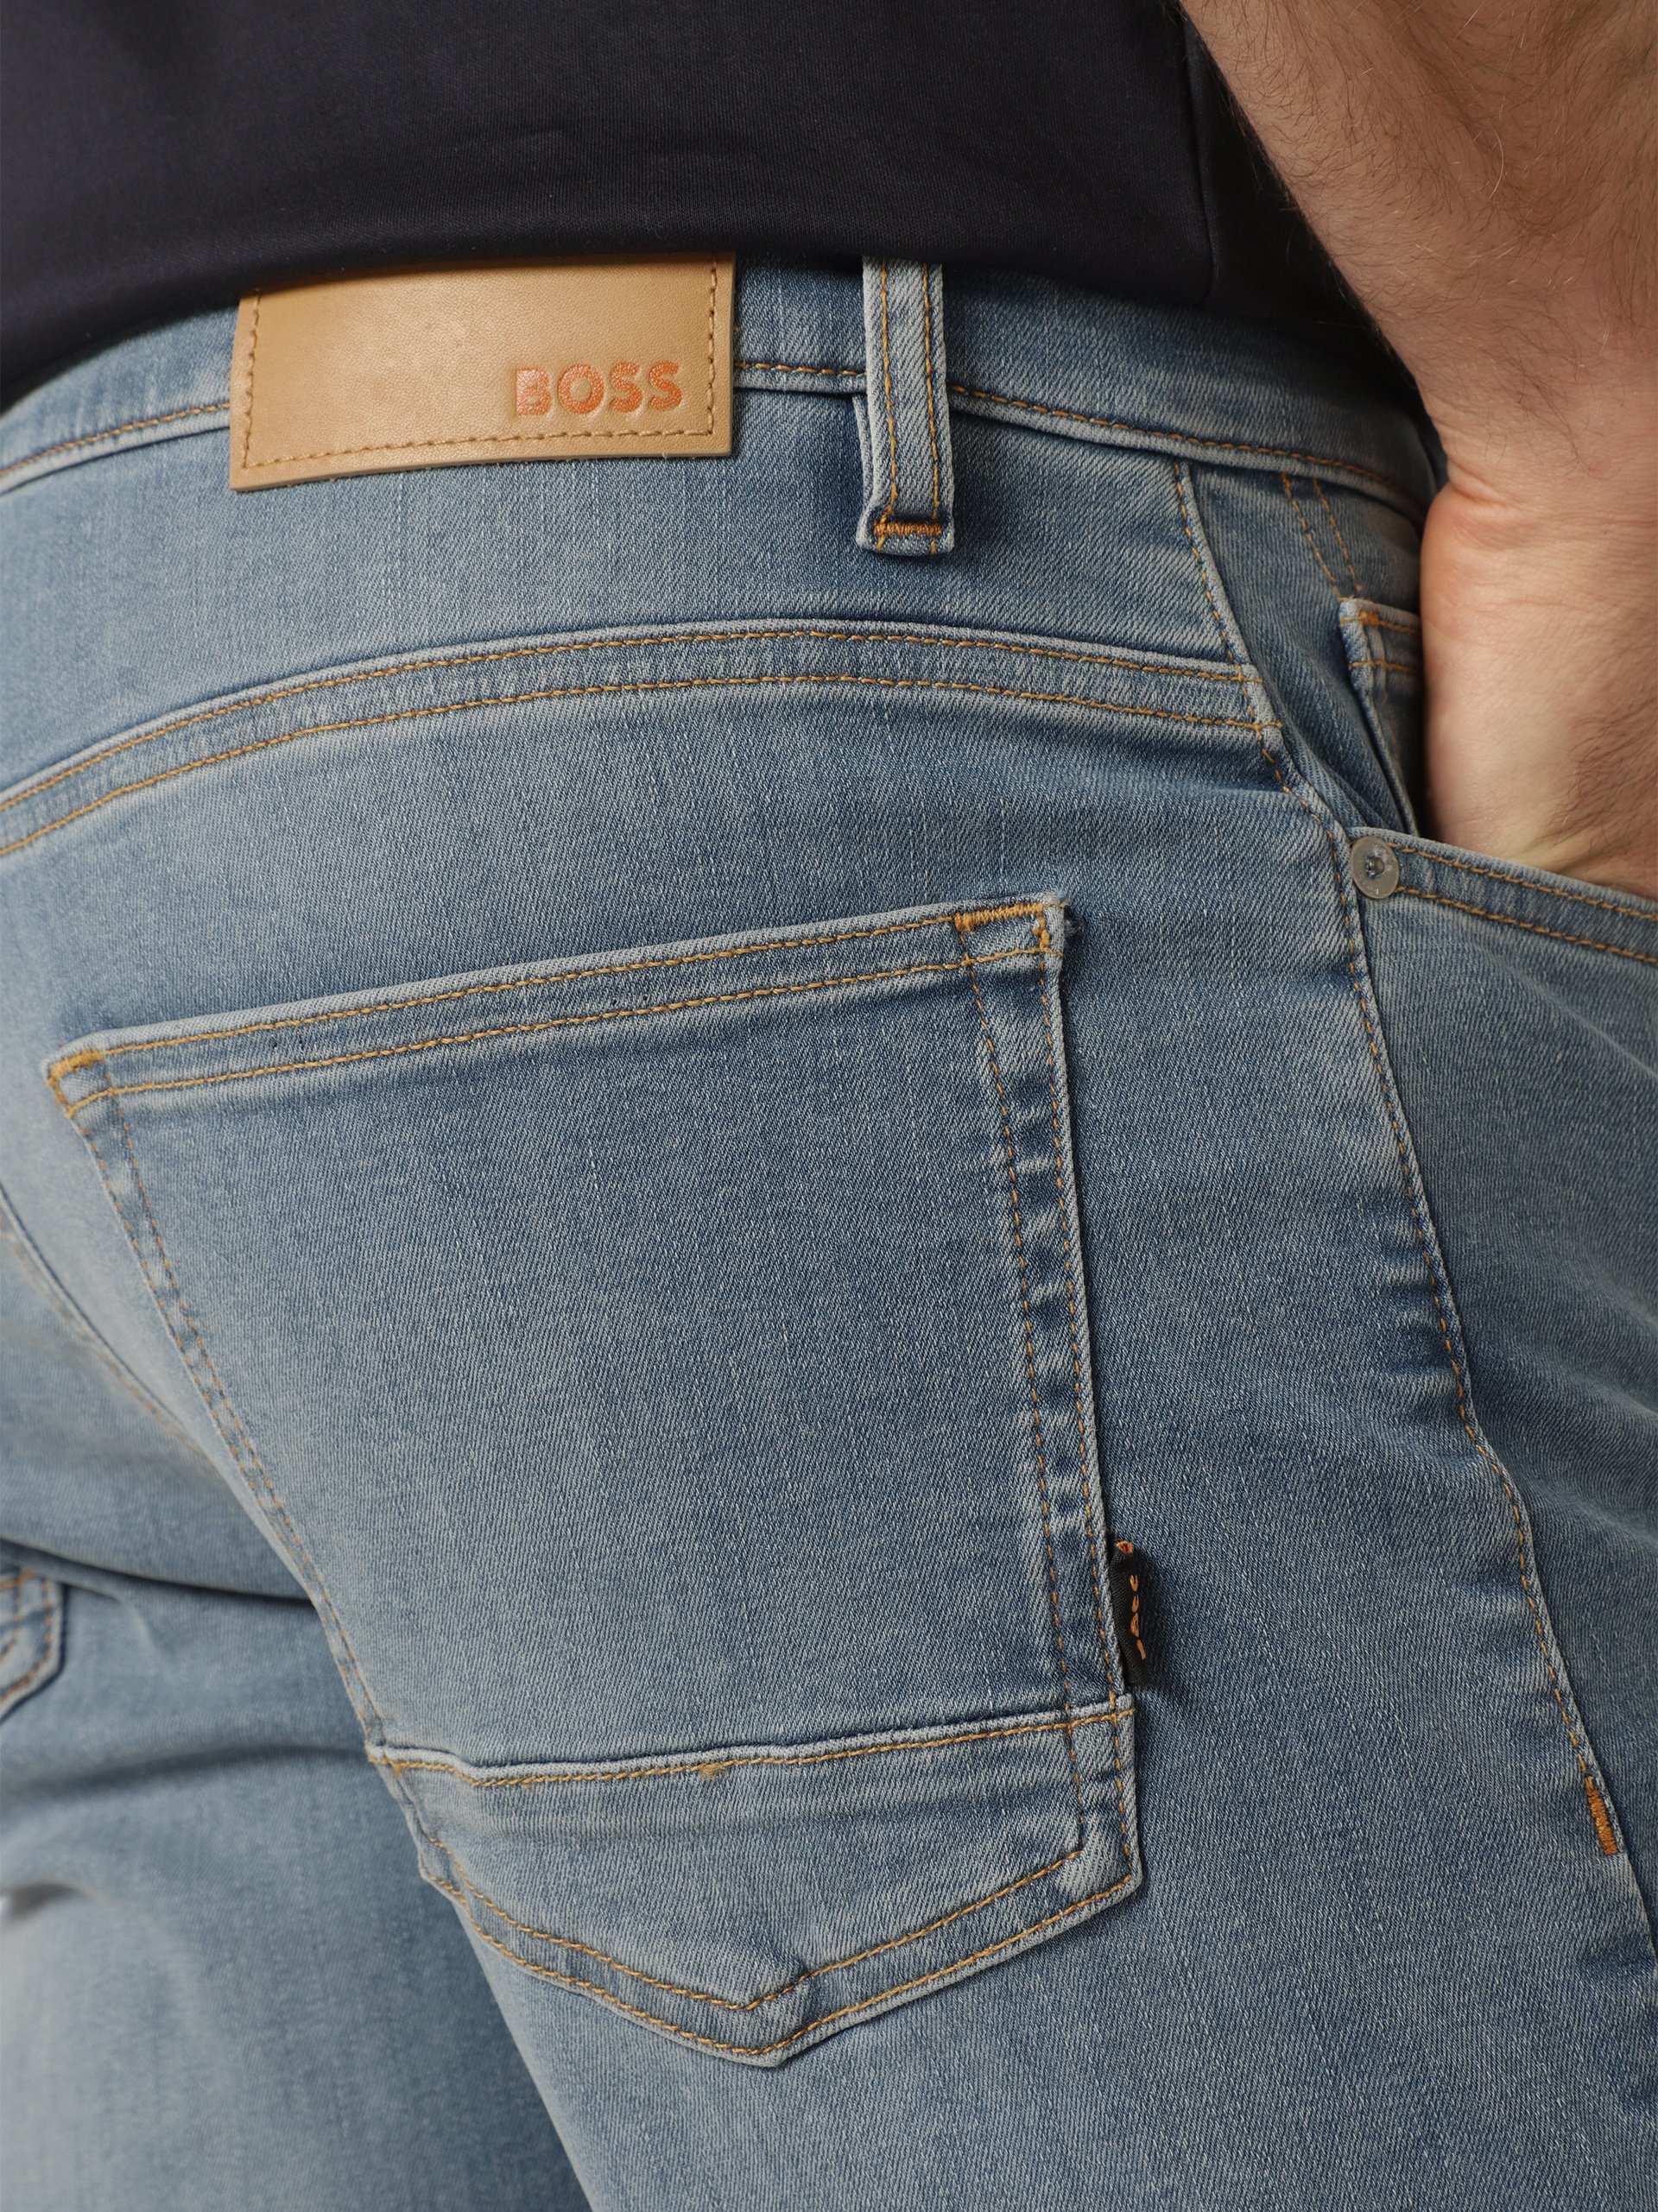 BOSS Orange Herren Jeans - Delaware online kaufen